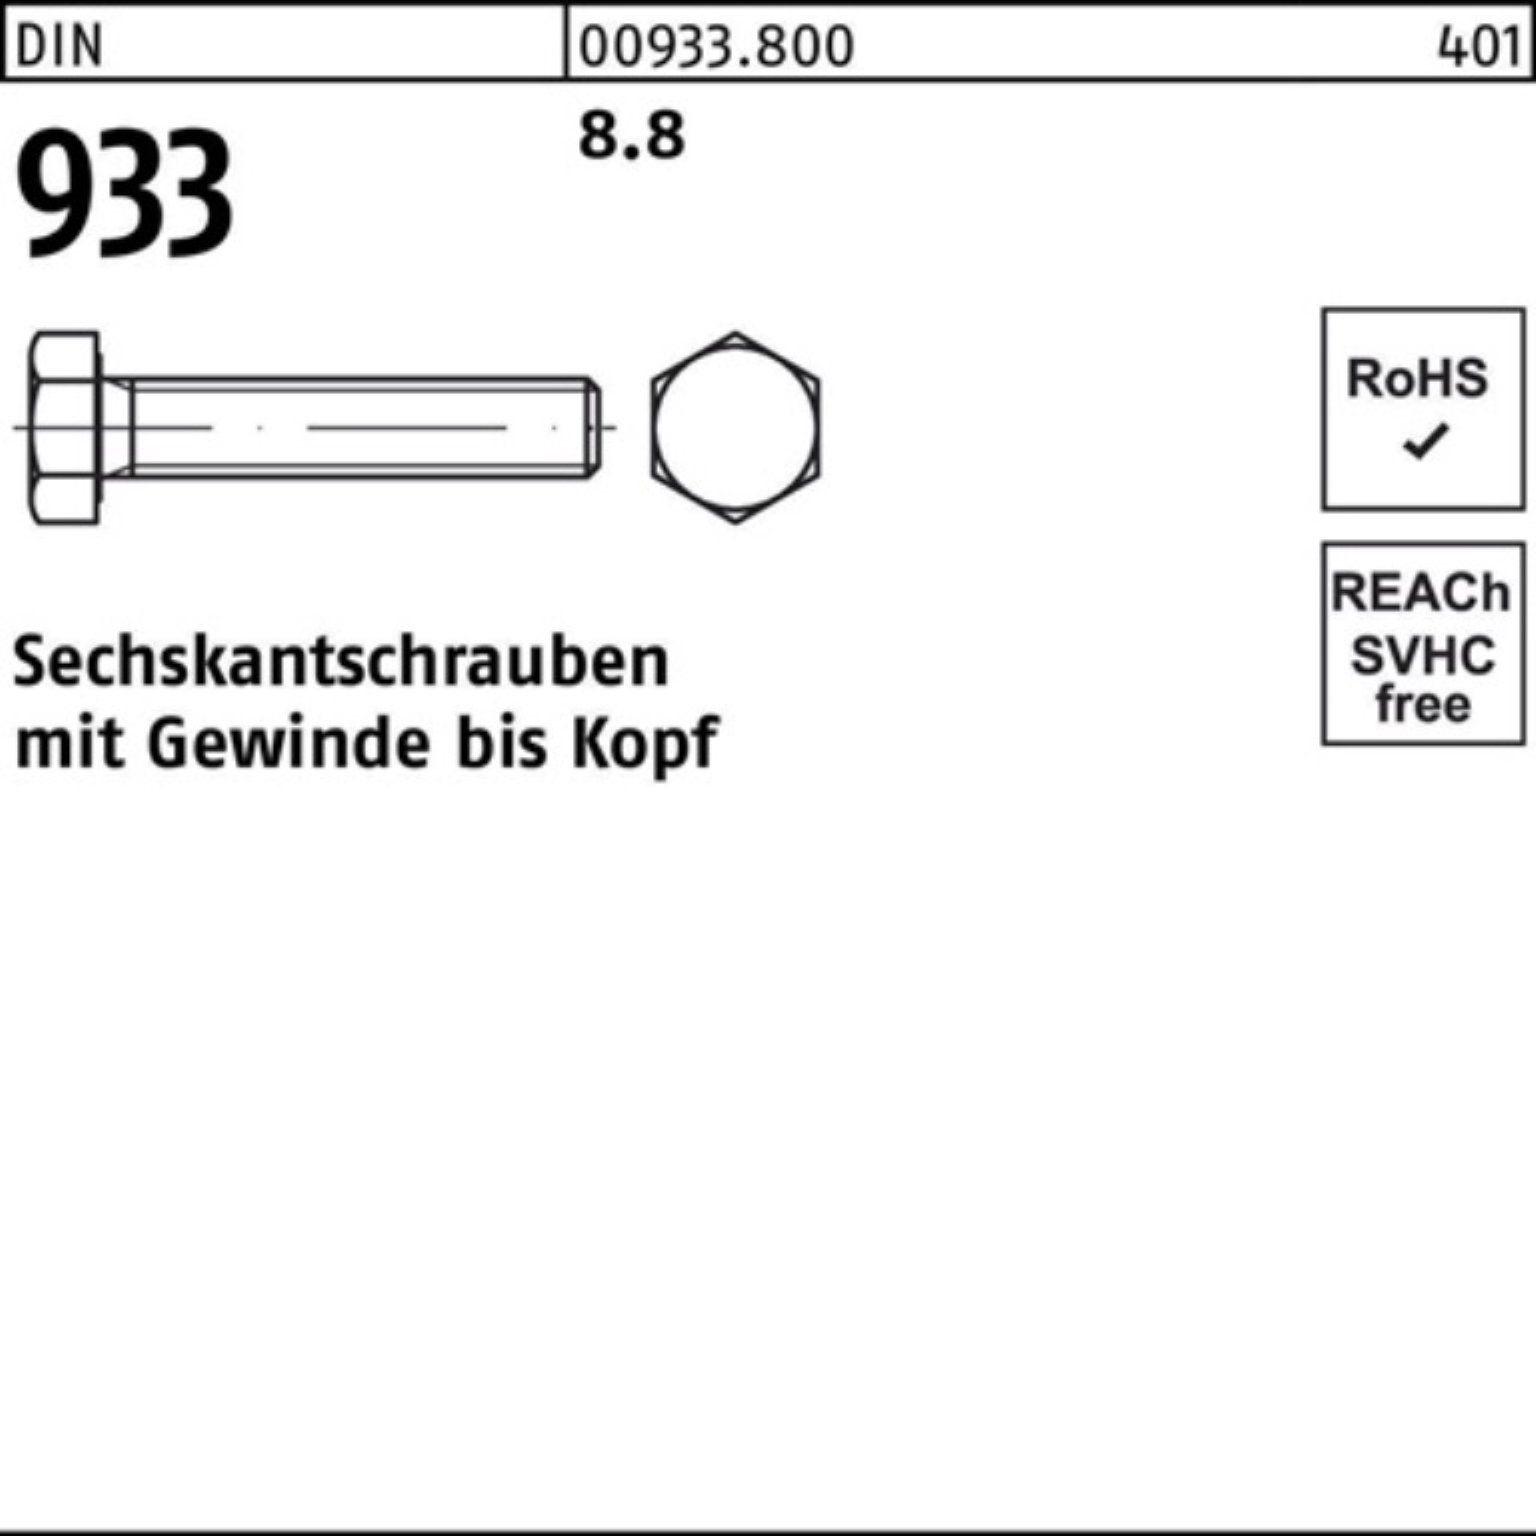 1 DIN Stück DIN Sechskantschraube Sechskantschraube 300 Pack M16x 933 8.8 100er Reyher 933 VG